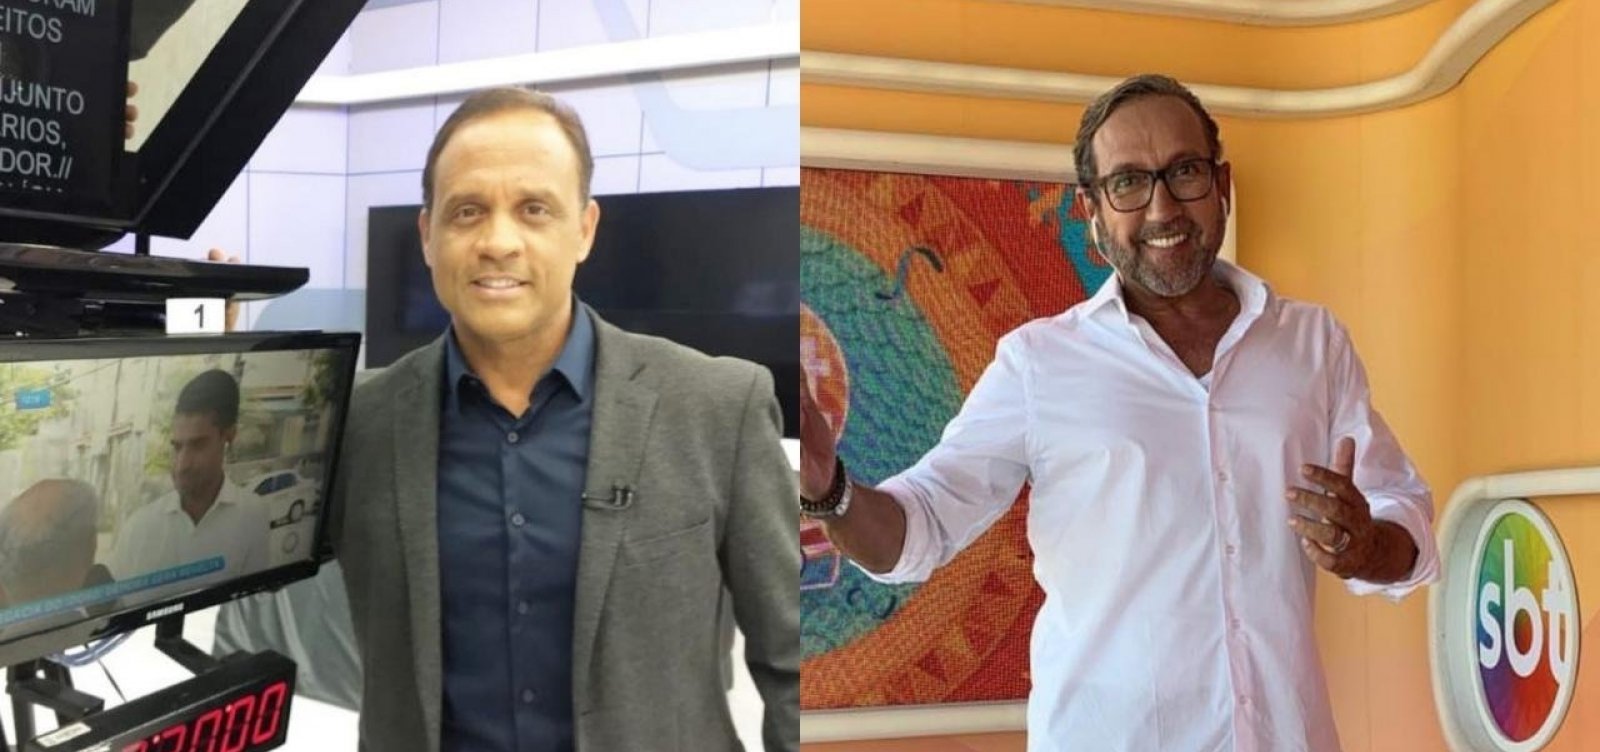 José Eduardo e Casemiro Neto: após anos de briga, a paz reina entre apresentadores da Record TV e SBT na Bahia (Divulgação)